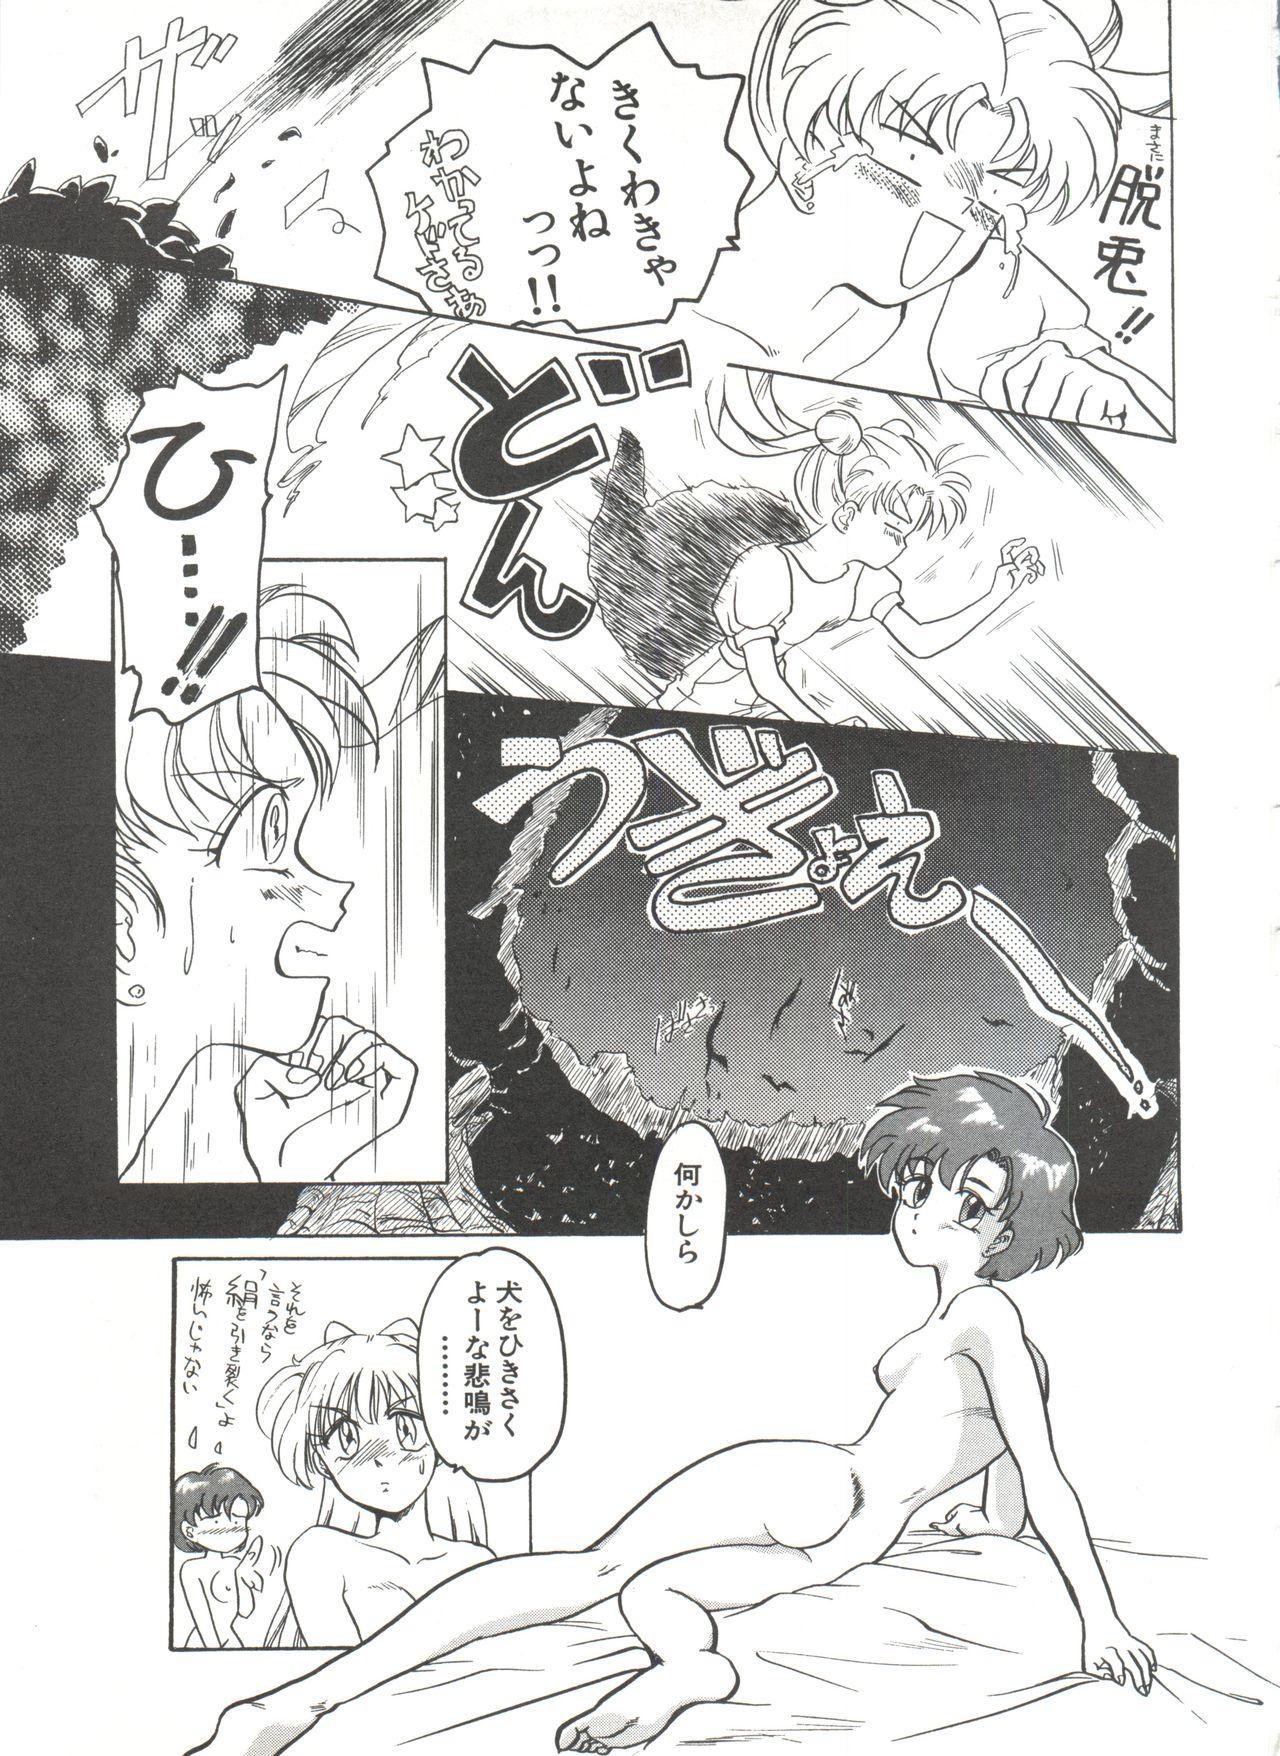 Bishoujo Doujinshi Anthology 7 - Moon Paradise 4 Tsuki no Rakuen 79